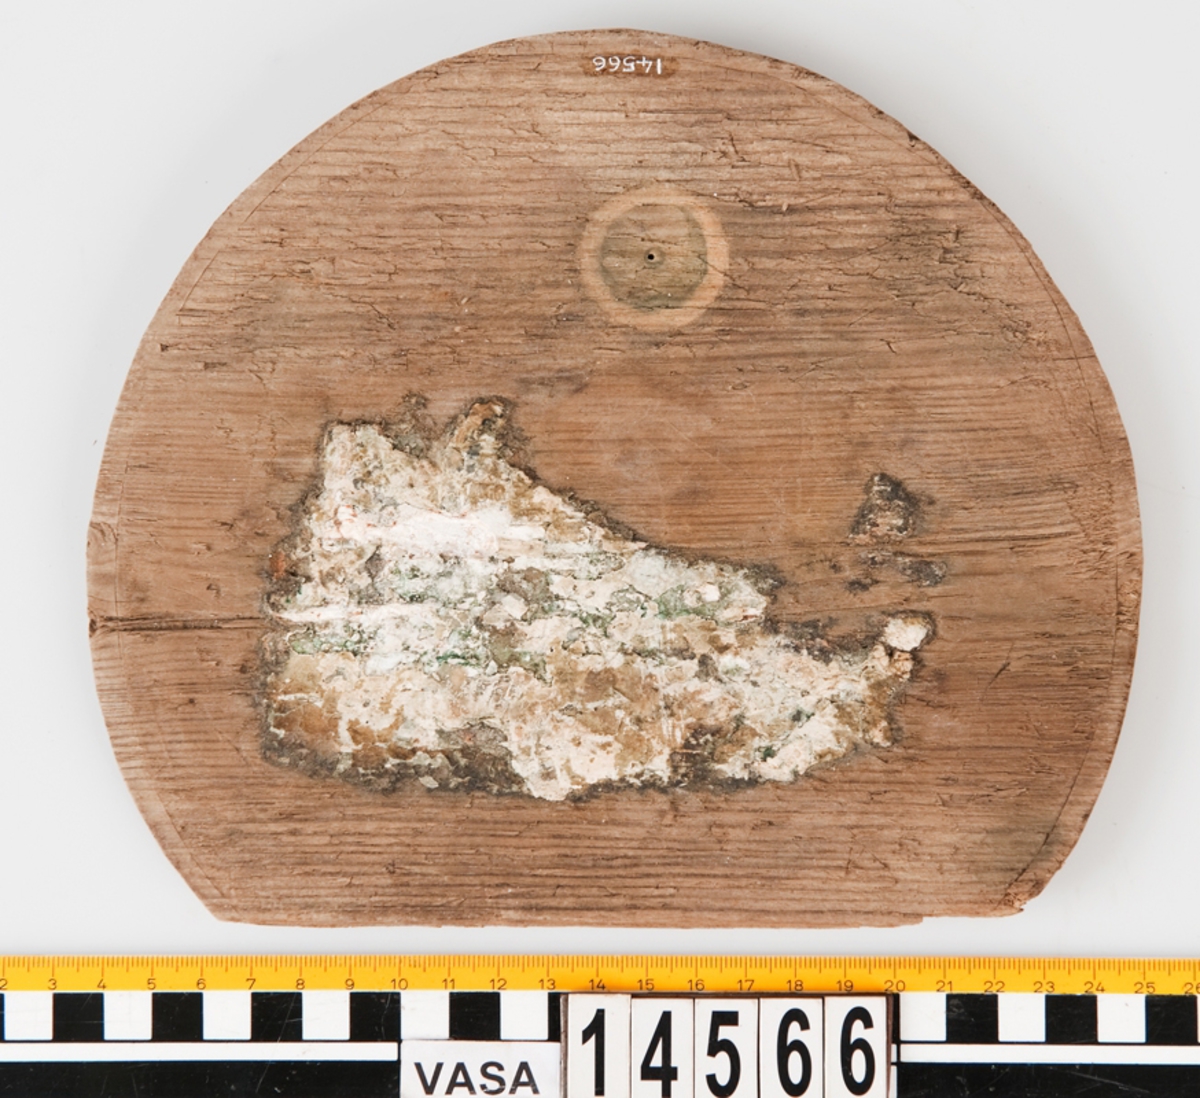 Botten till en bytta eller liten tunna. En del saknas. På föremålet finns vita klumpar som efter analys visats sig vara troliga rester av smör.